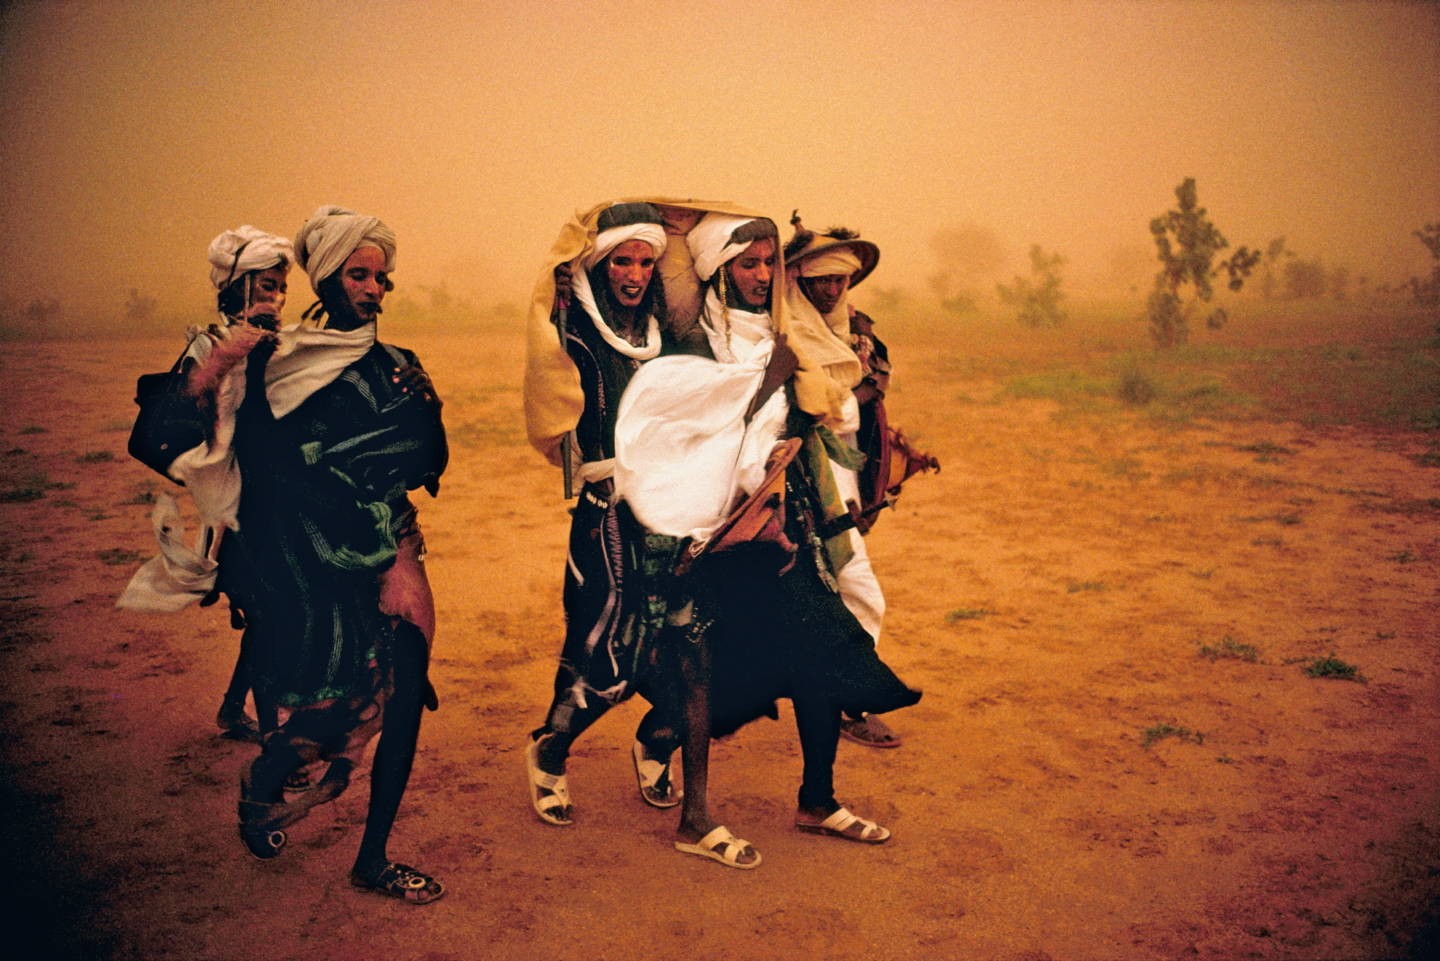 Представители народности Вудабе (фульбе) готовятся к конкурсному танцу на празднике выбора партнёра Геревол. Разгар песчаной бури, Нигер. Фотограф Паскаль Мэтр